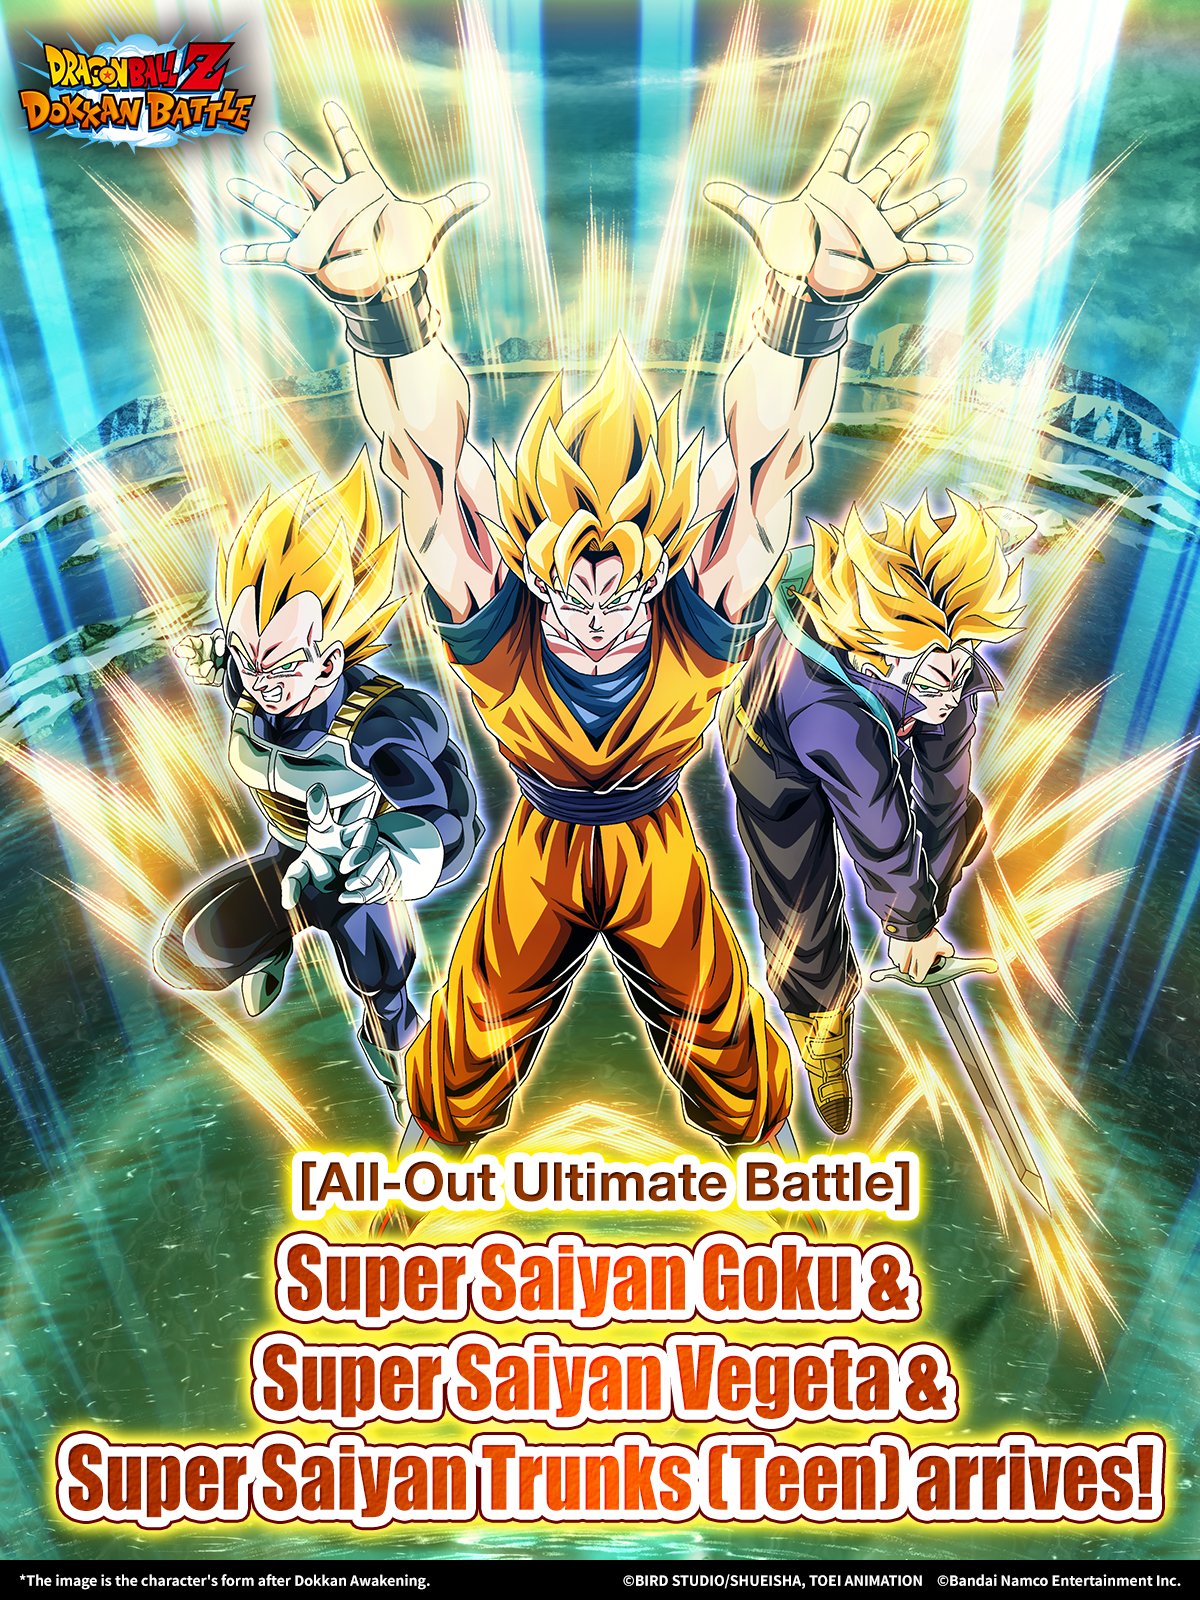 REDRAW By ME) Super Saiyan Blue Goku From DBS (Plus SSJ Goku Ver) : r/dbz